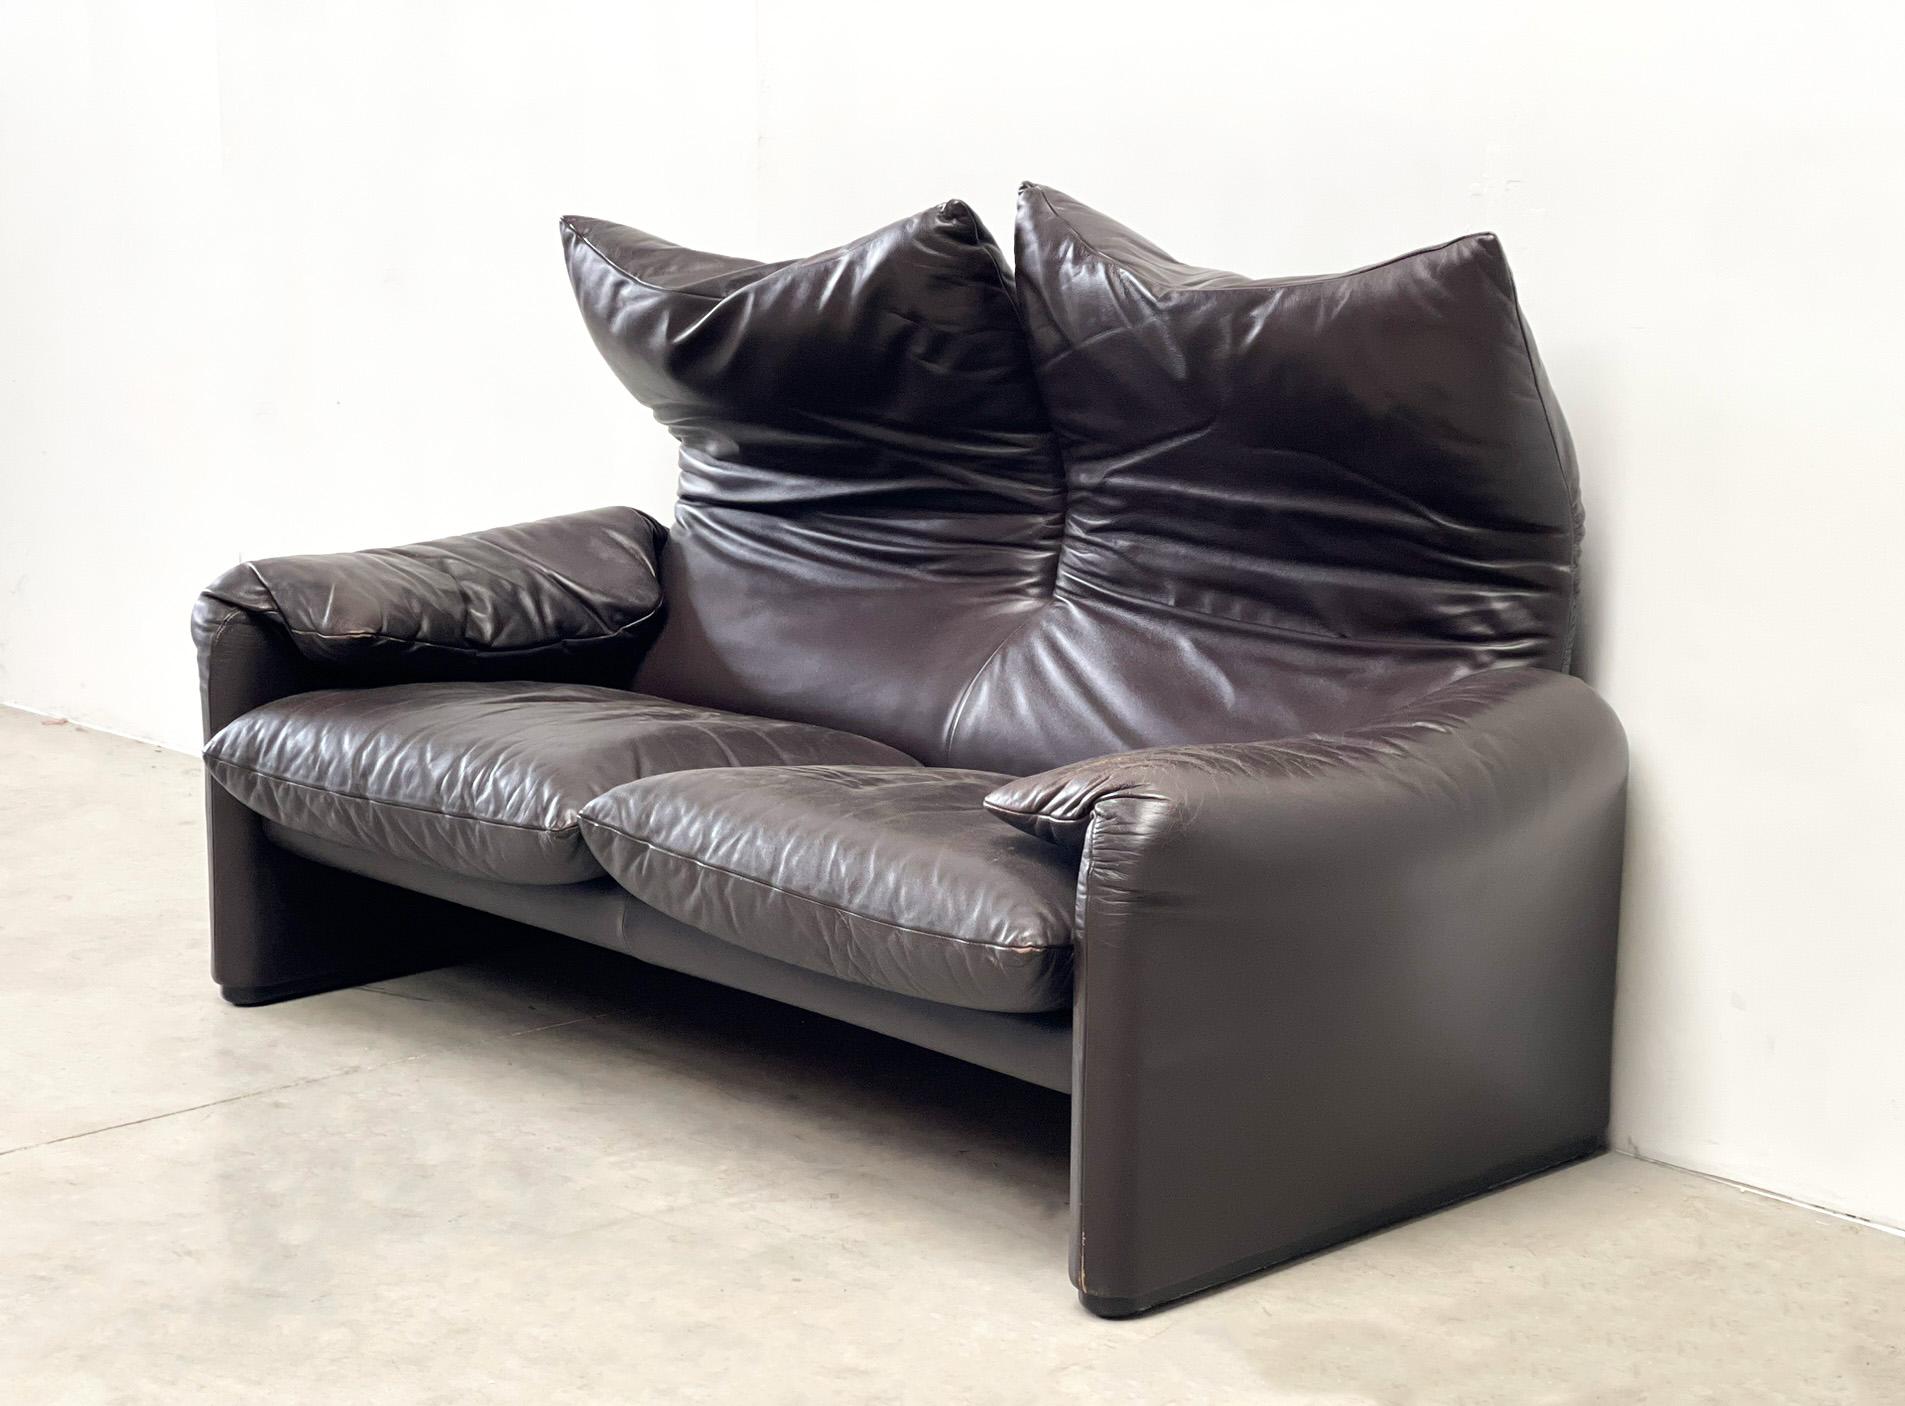 Leather Maralunga Sofa by Vico Magistretti for Cassina 1